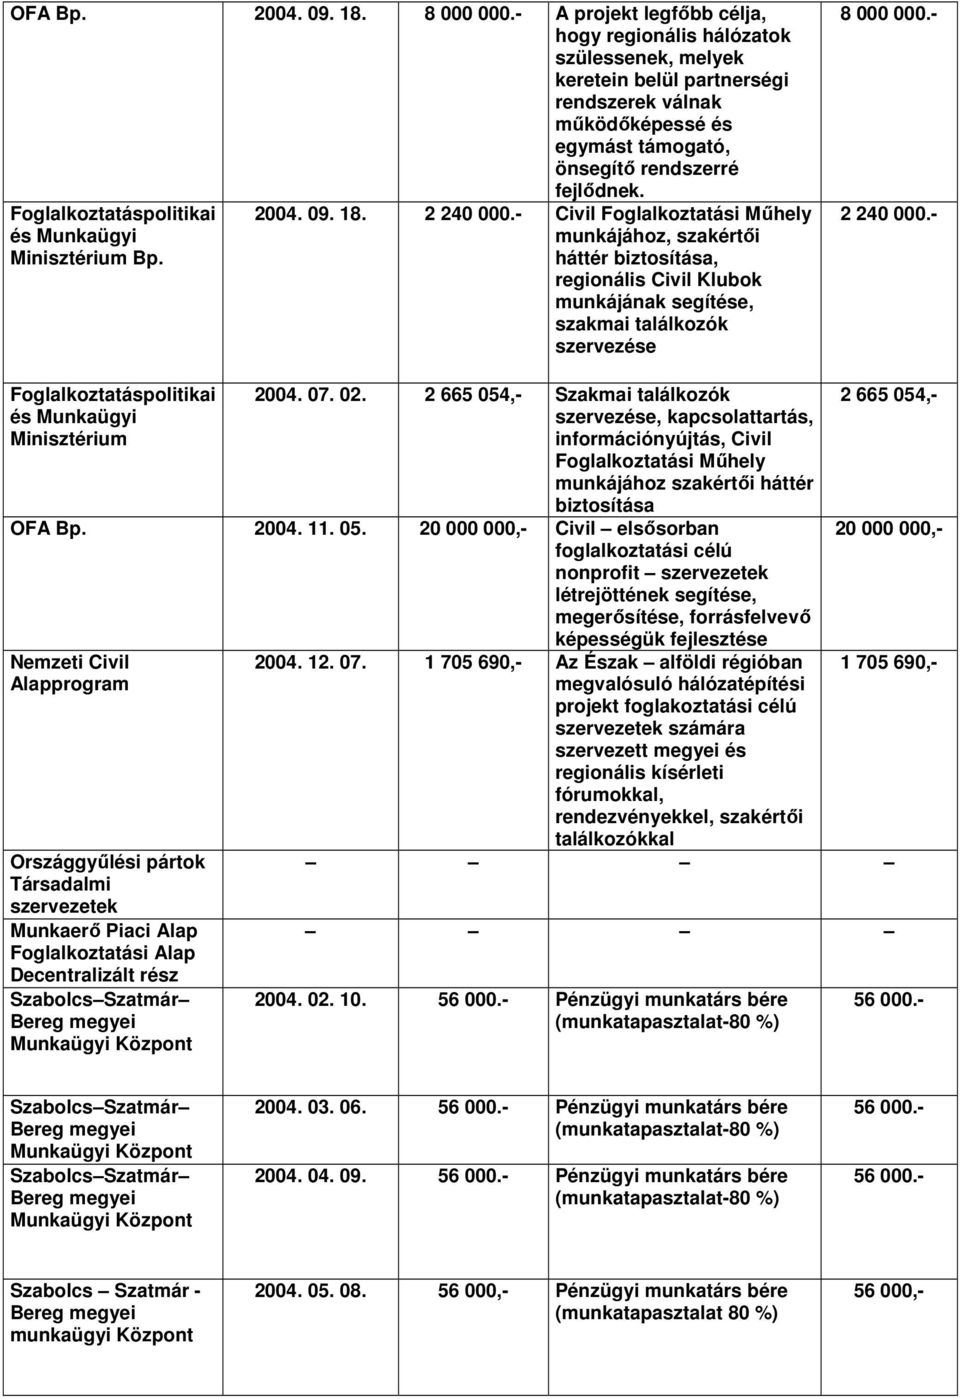 Foglalkoztatáspolitikai és Munkaügyi Minisztérium Bp. 2004. 09. 18. 2 240 000.